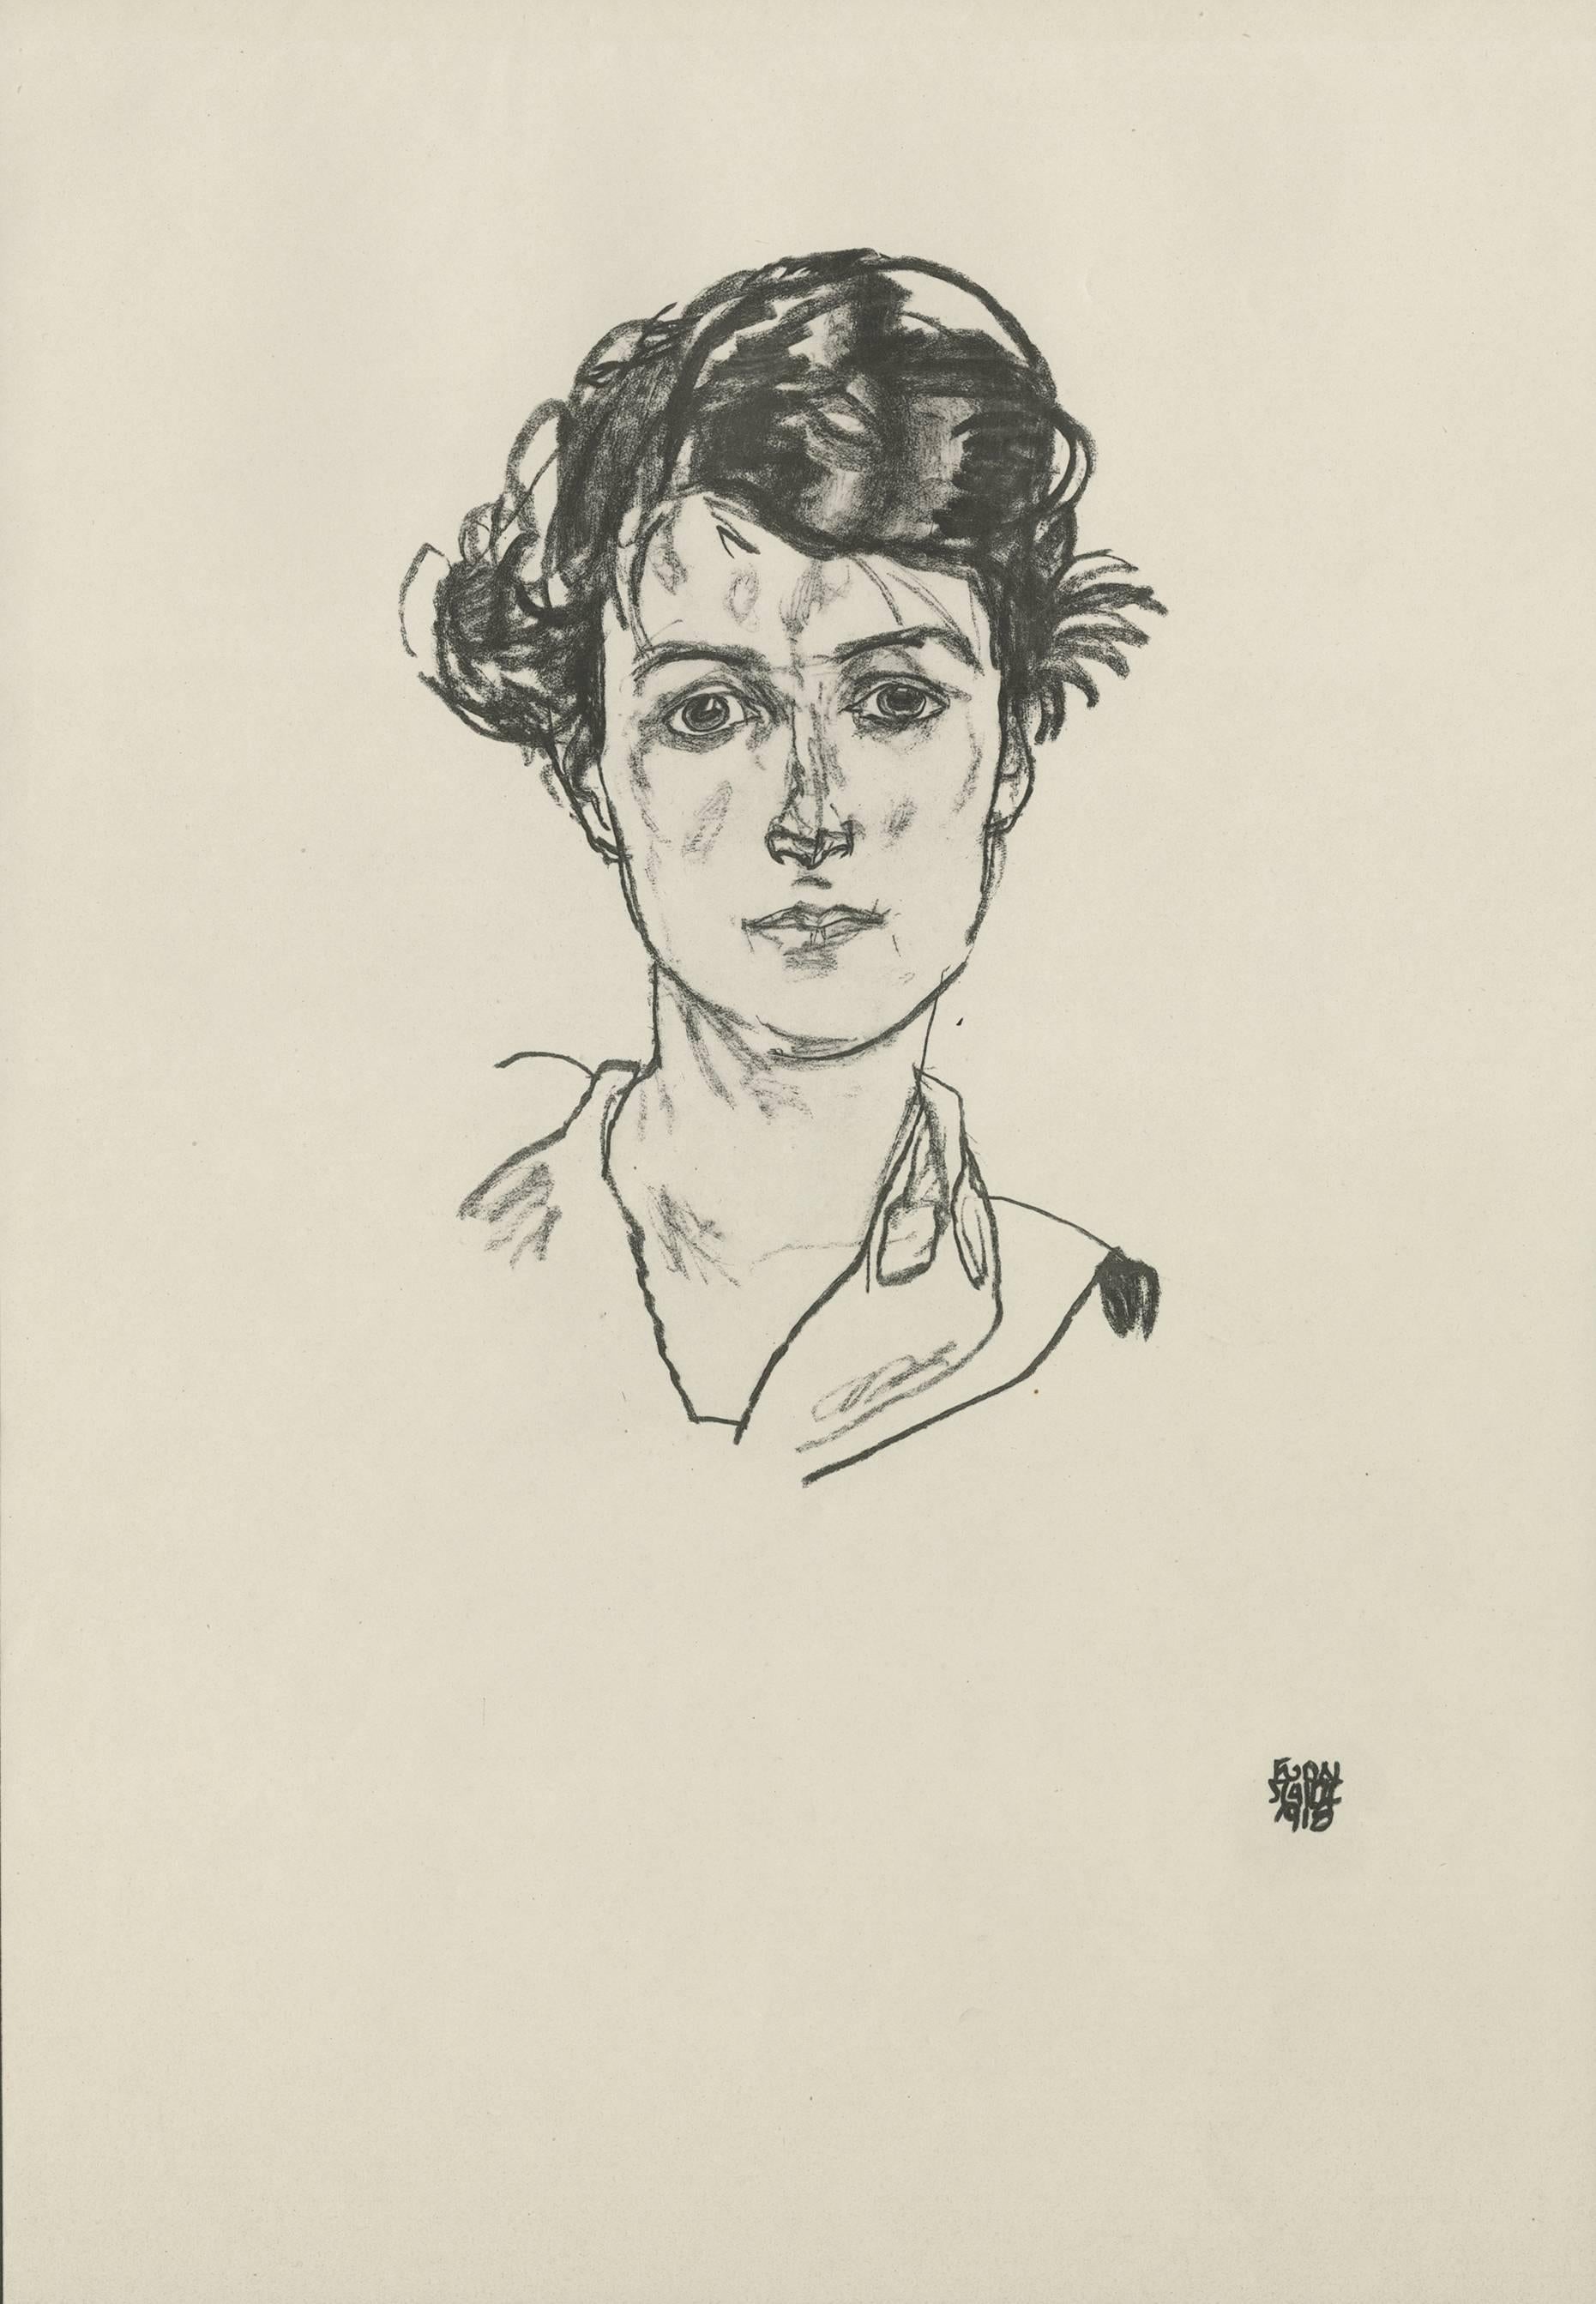 E. Strache, Handzeichnungen folio, "Portrait Study (Head of a Girl)" Collotype